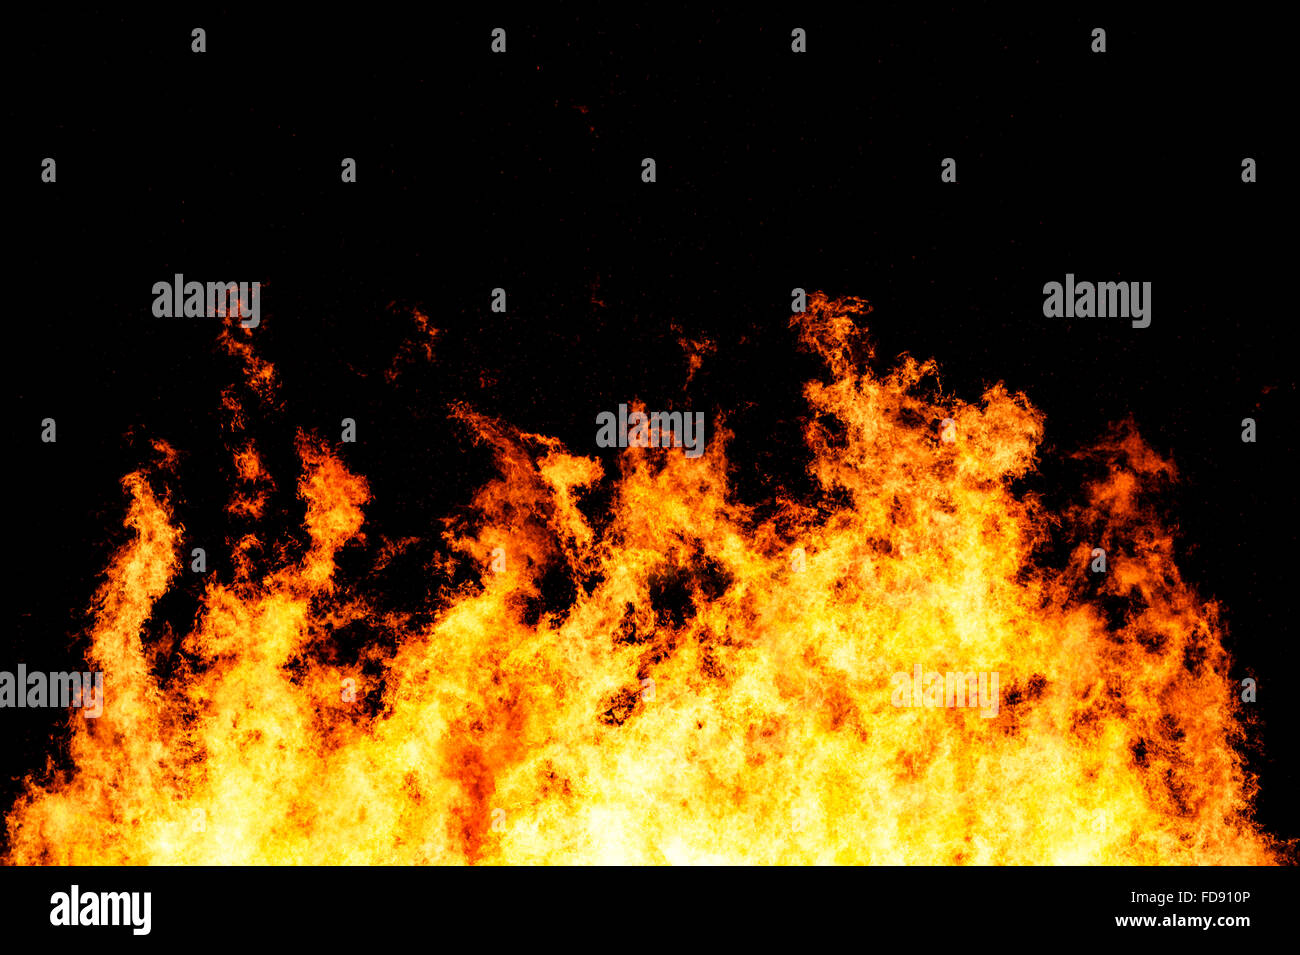 Voraz incendio dispararon contra un obturador de alta velocidad para congelar el movimiento de las llamas Foto de stock